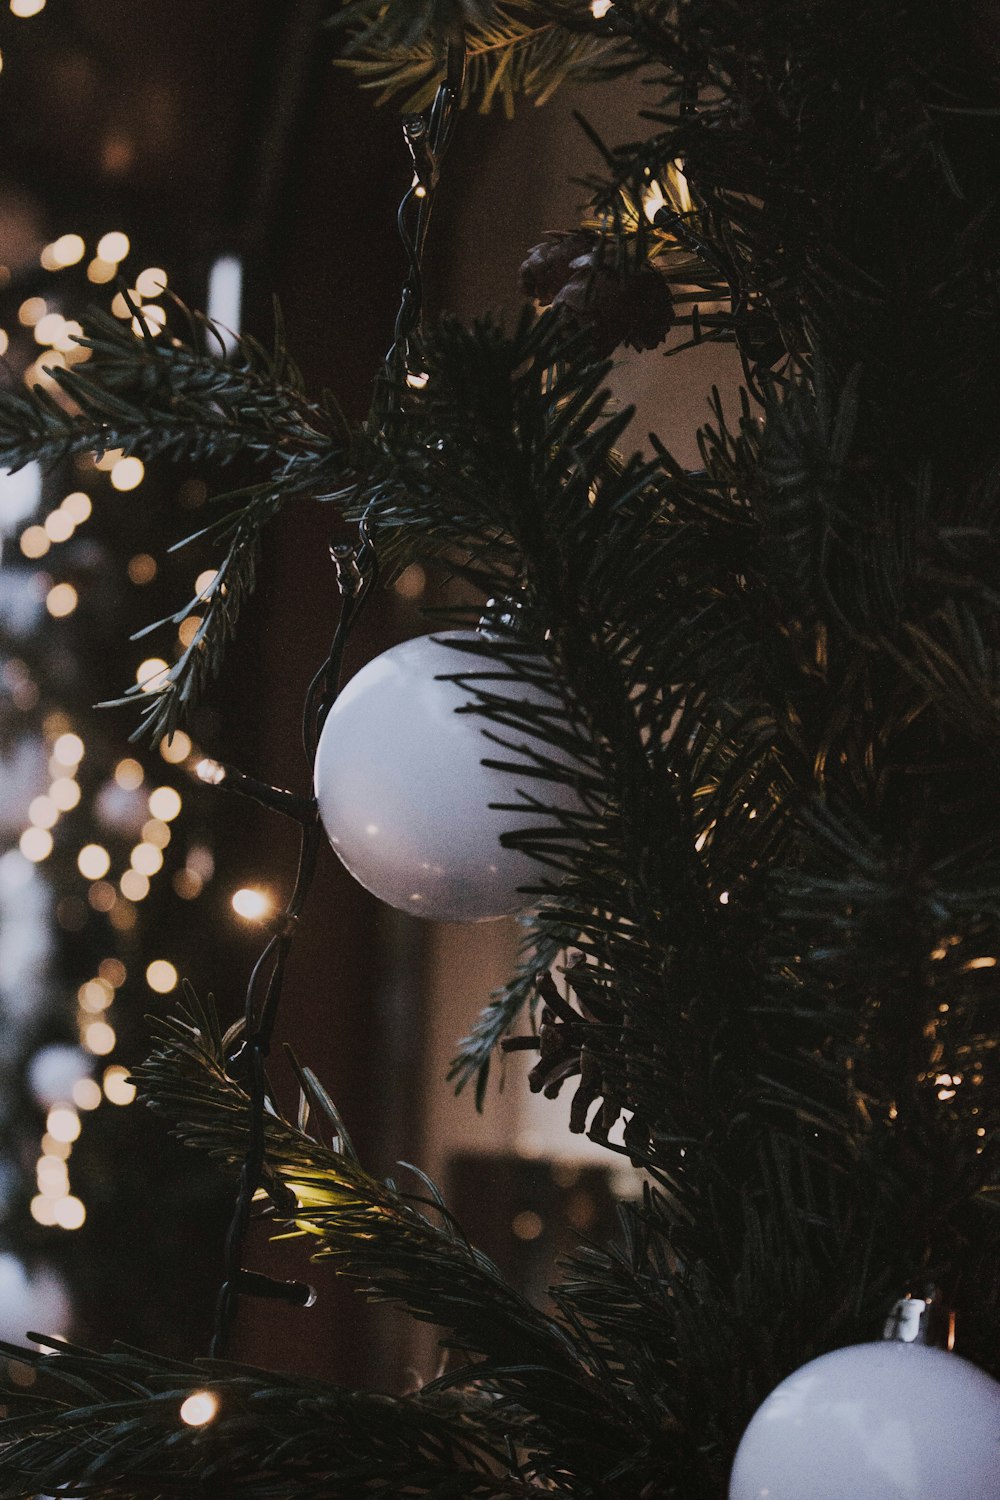 크리스마스 트리에 흰색 싸구려와 녹색 끈 조명